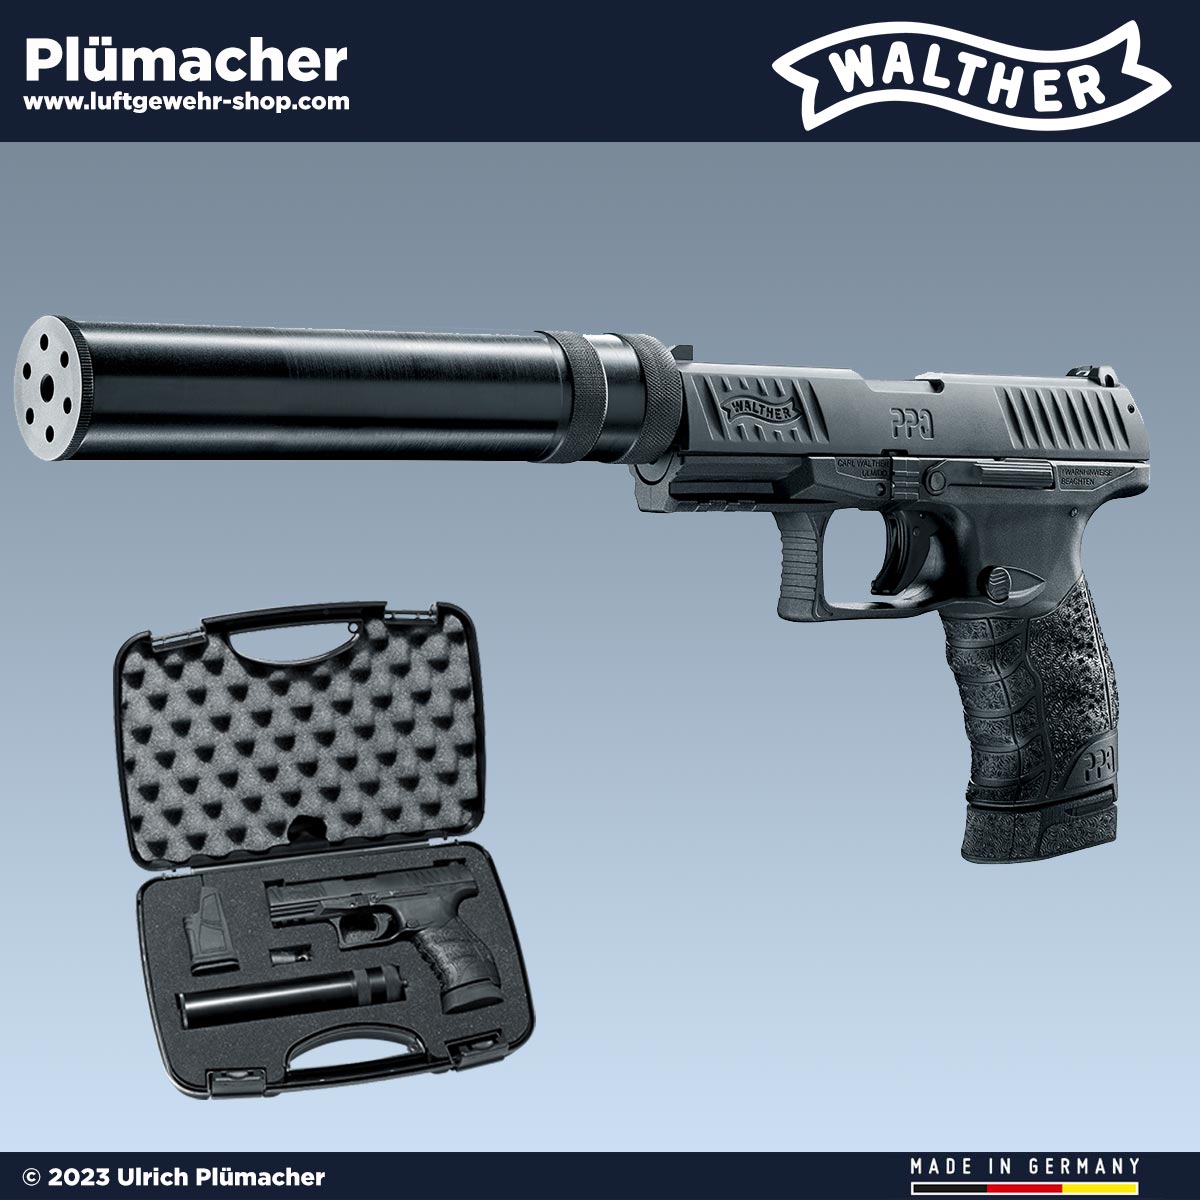 Walther Gaspistolen & Schreckschusswaffen kaufen - hier die WALTHER PPQ,  P22, P99, P88, PP. Luftgewehr-Shop - Luftgewehre, Schreckschusswaffen, CO2  Waffen, Luftpistolen kaufen